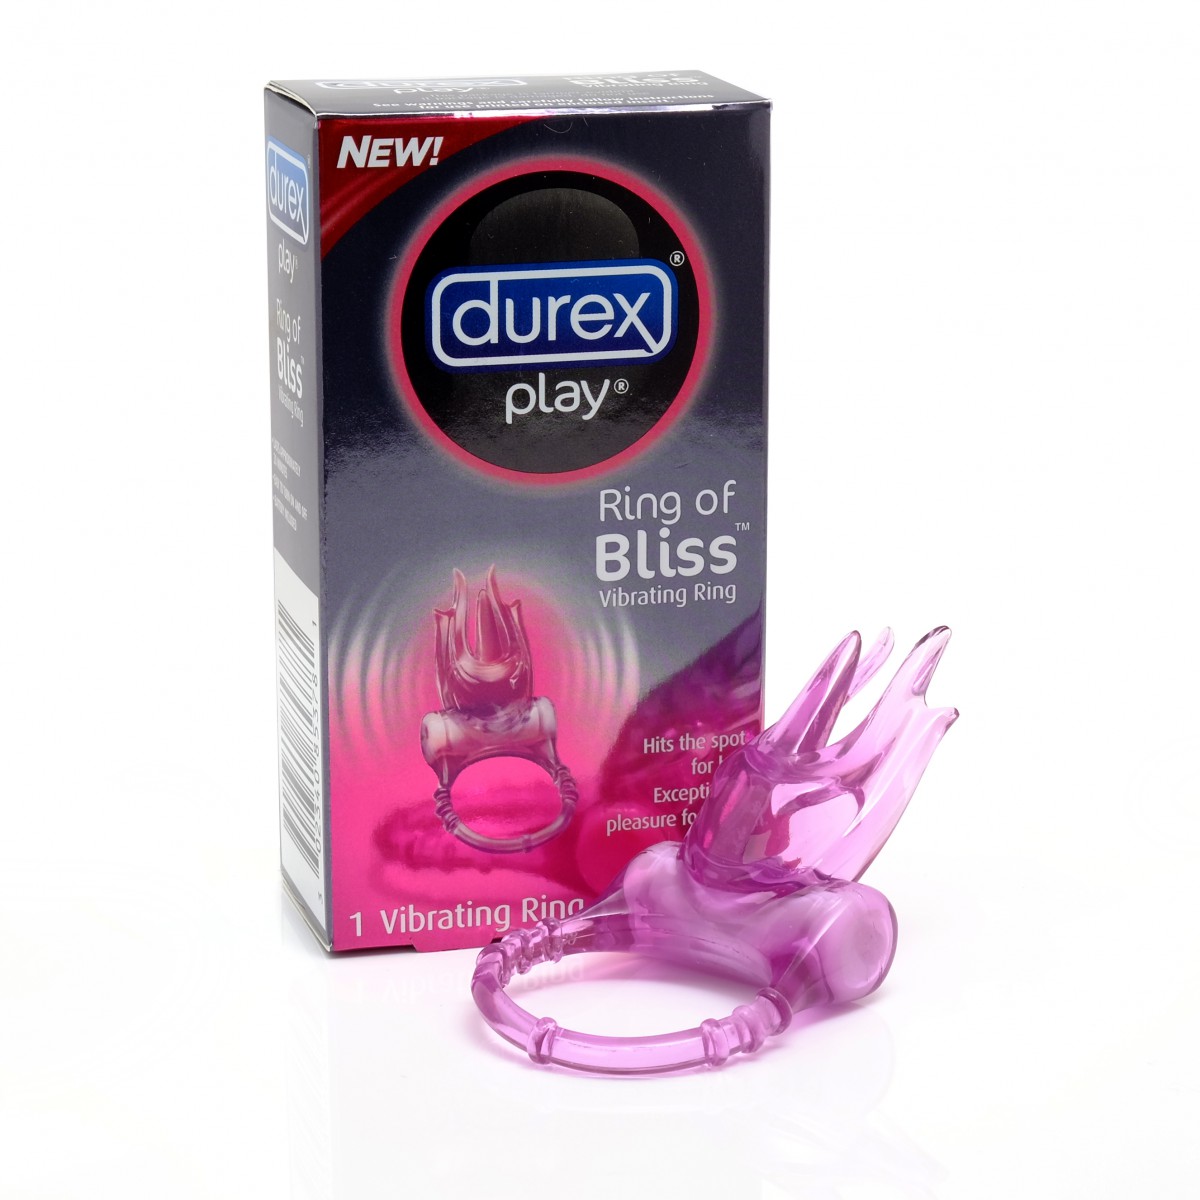  Sỉ Vòng rung tình yêu Durex Play Bliss hàng xách tay